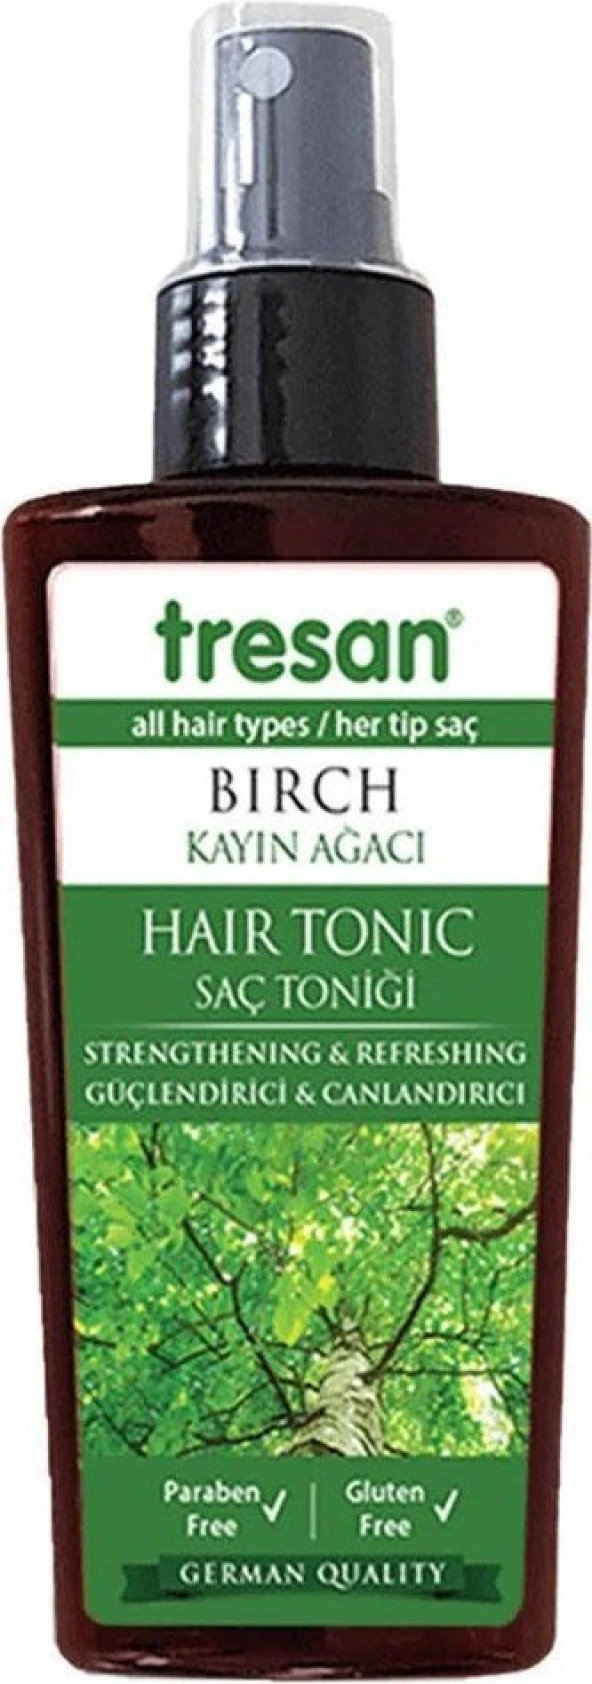 Tresan Kayın Ağacı Güçlendirici Ve Canlandırıcı Saç Toniği 125 ml X 2 Adet